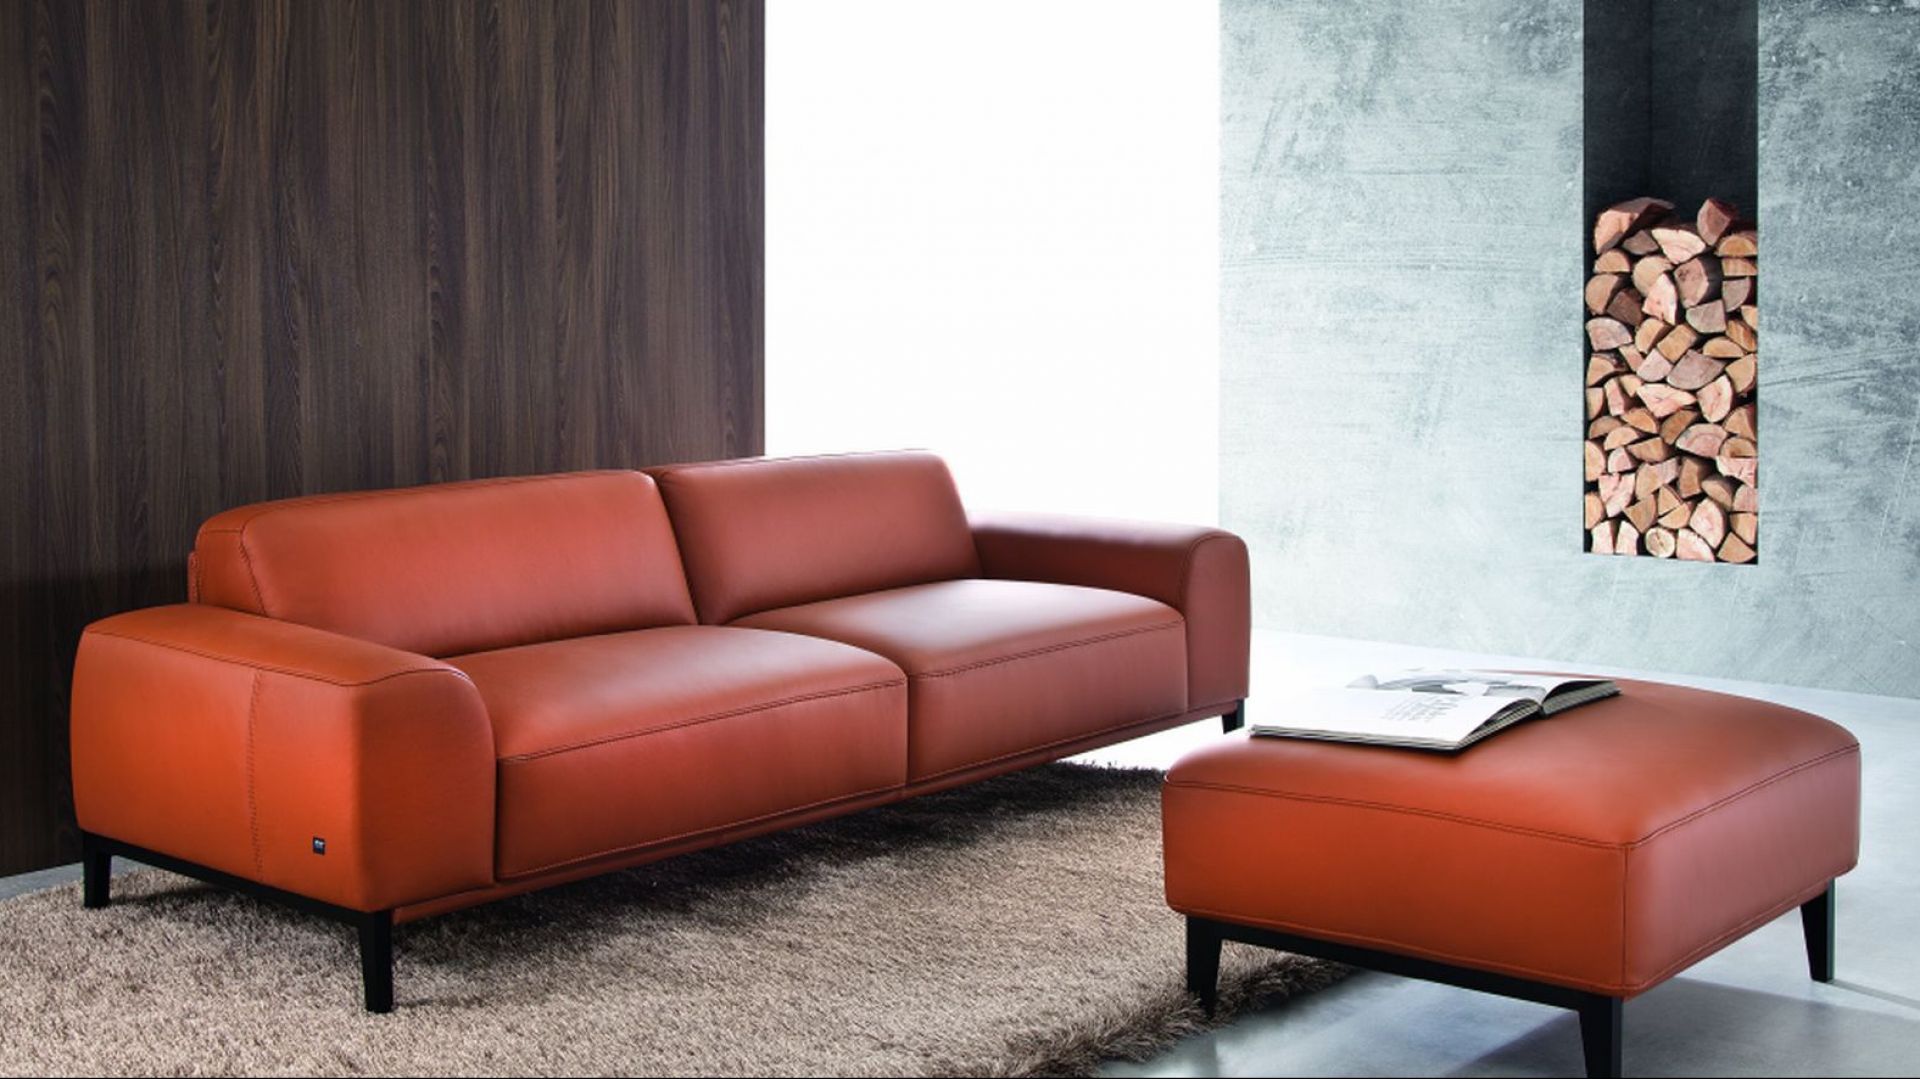 Sofa "Point" - modernistyczna i awangardowa